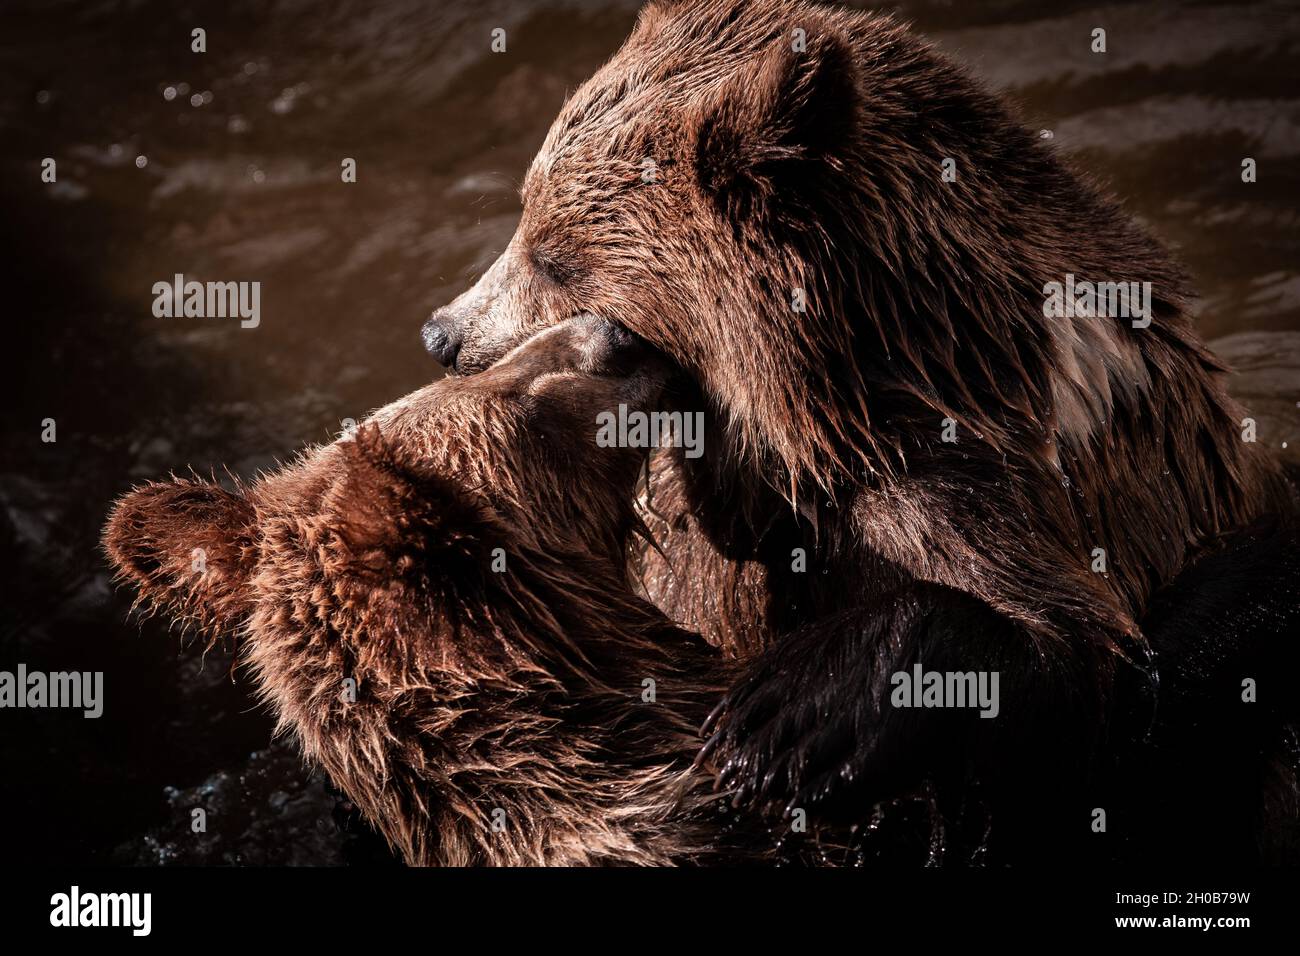 Maestosi orsi bruni (Ursus arctos), stanno giocando in acqua durante i giorni estivi in natura, utile per giornali, articoli, Slovacchia Foto Stock